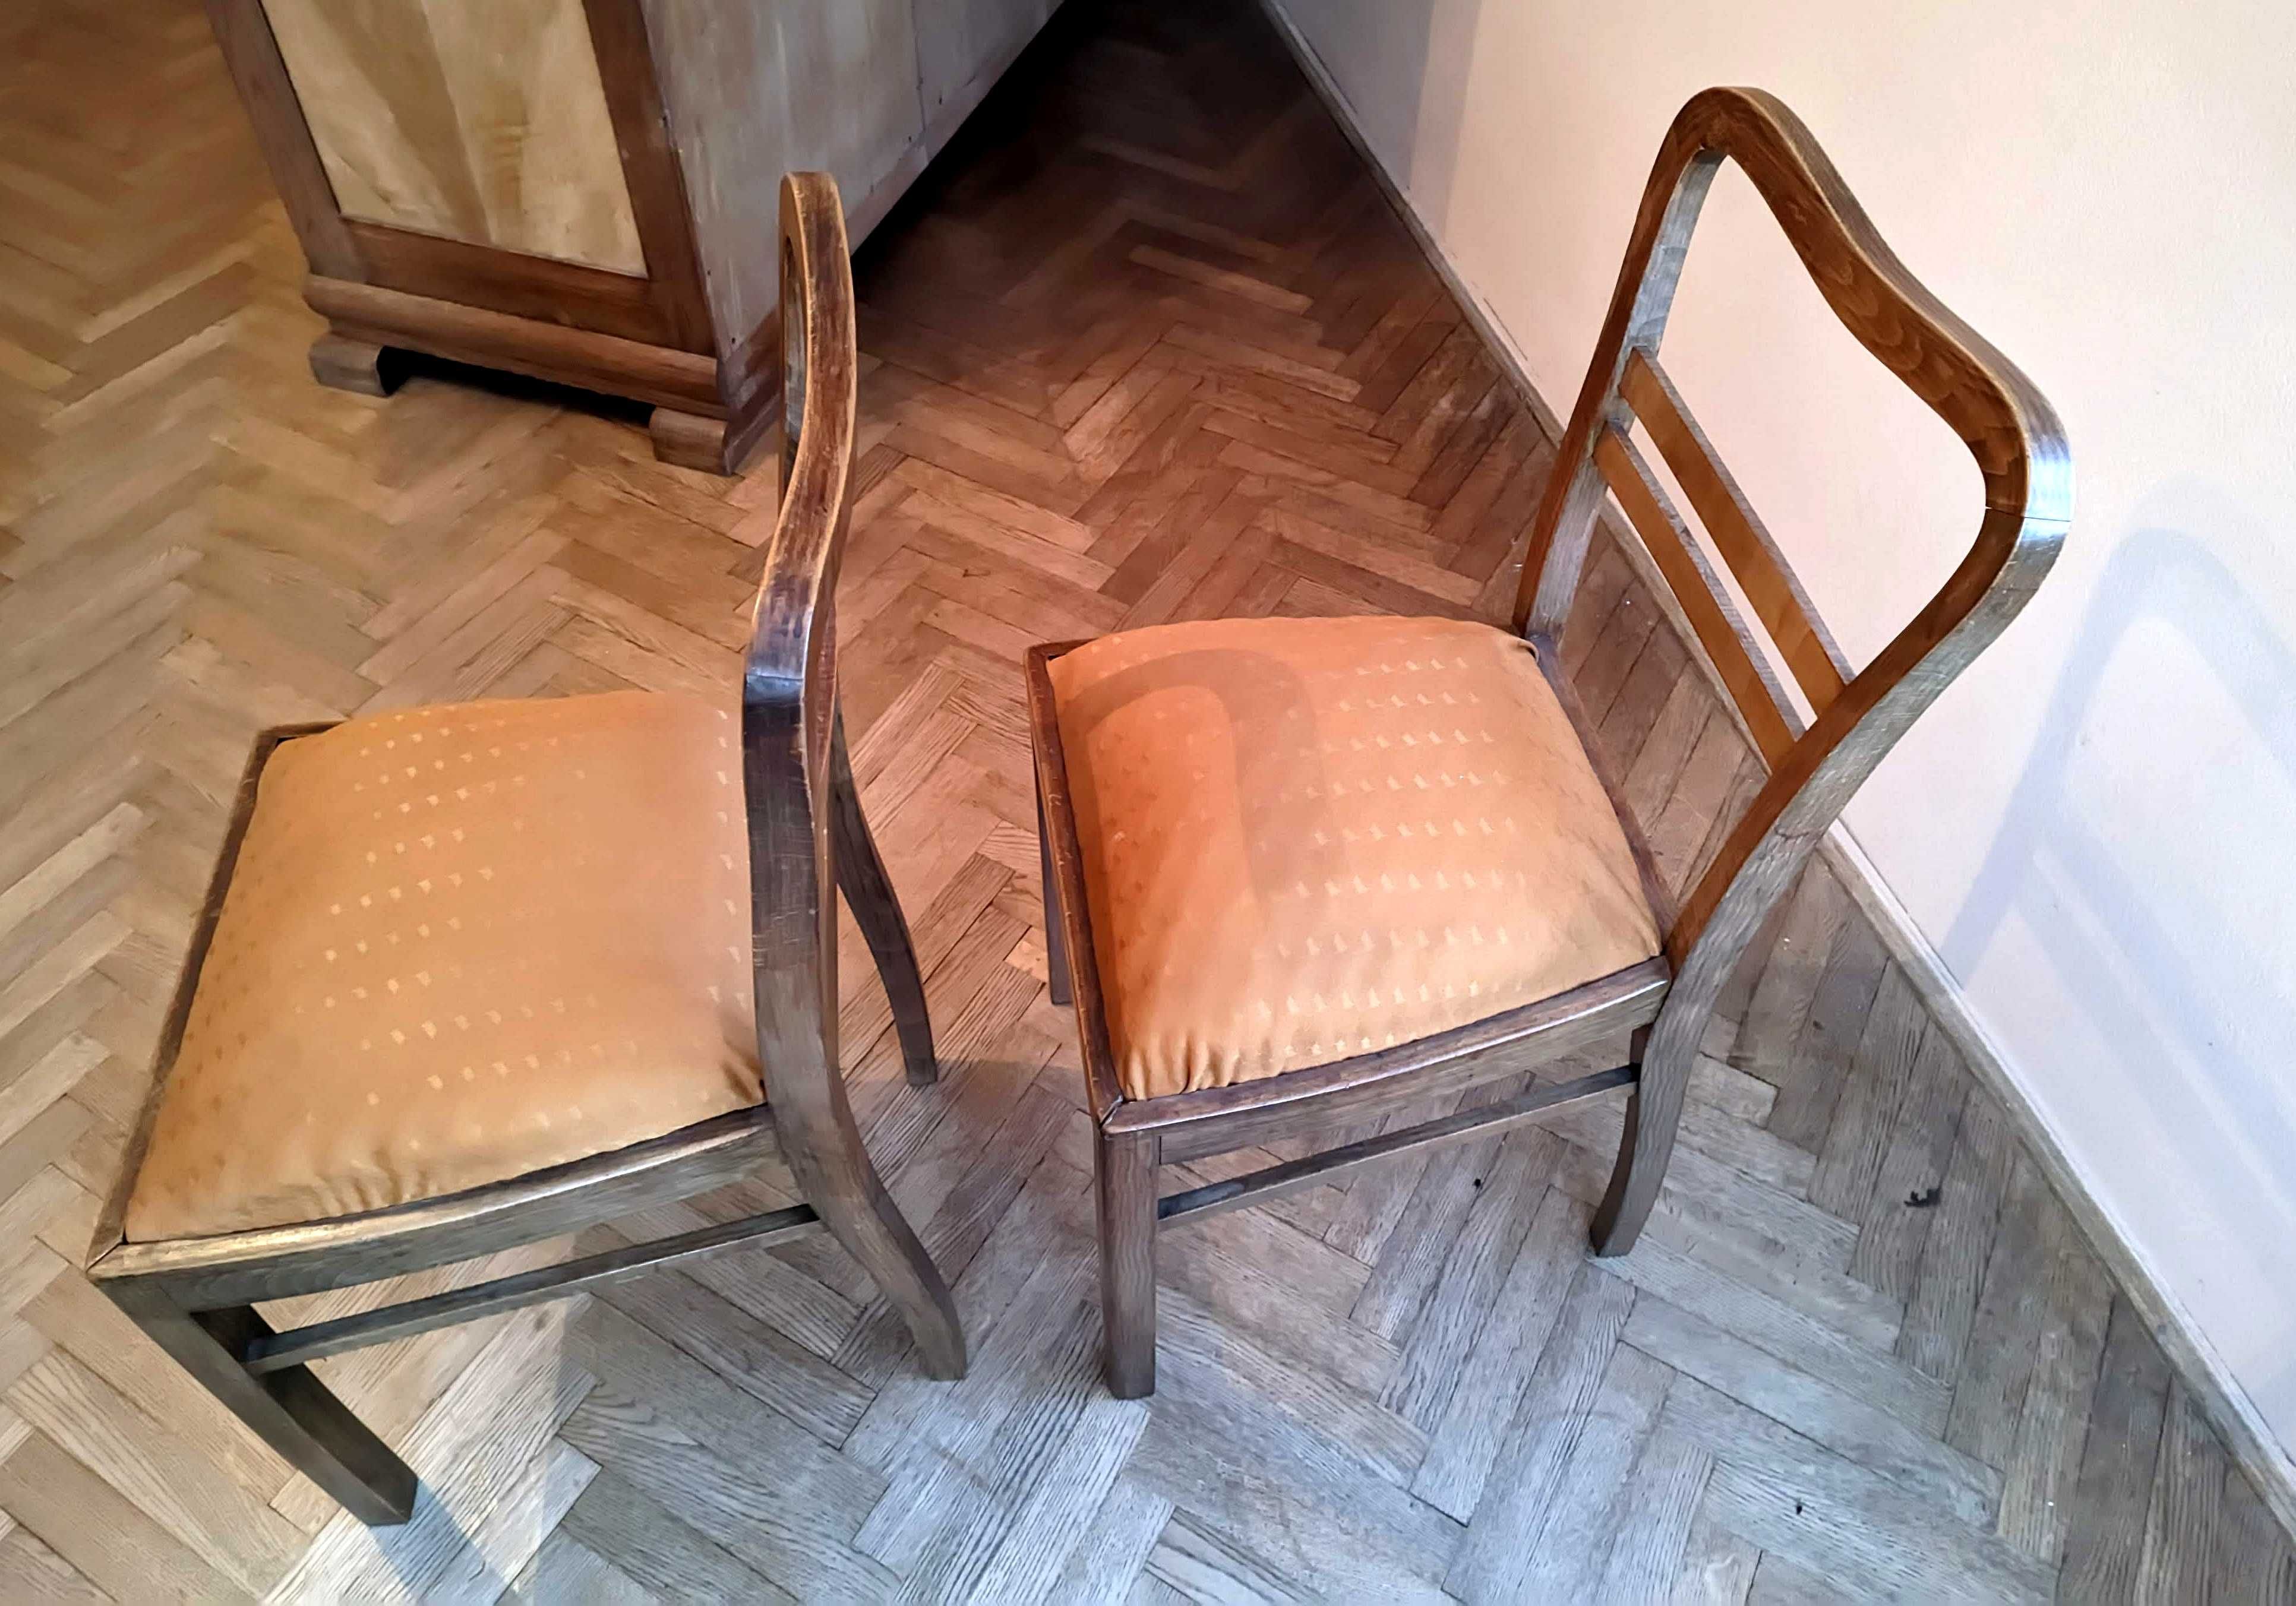 2 KRZESŁA art deco - stare - antyk - drewniane krzesło gięte